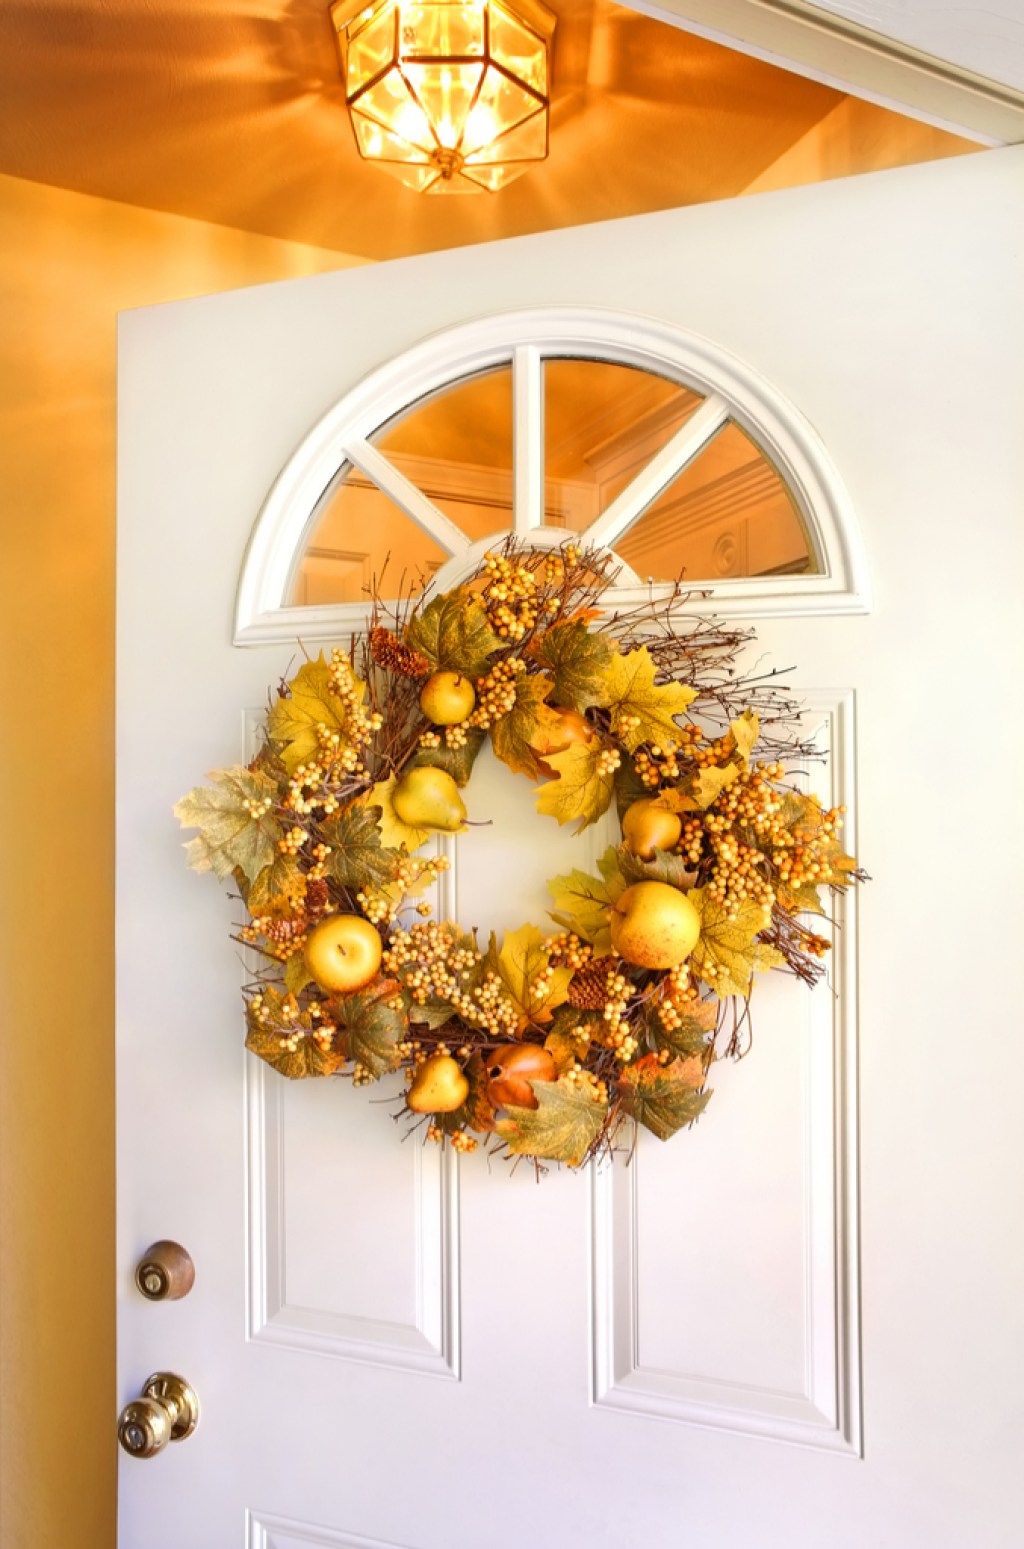 Sezonski venec na vratih, ki krepi vaš dom